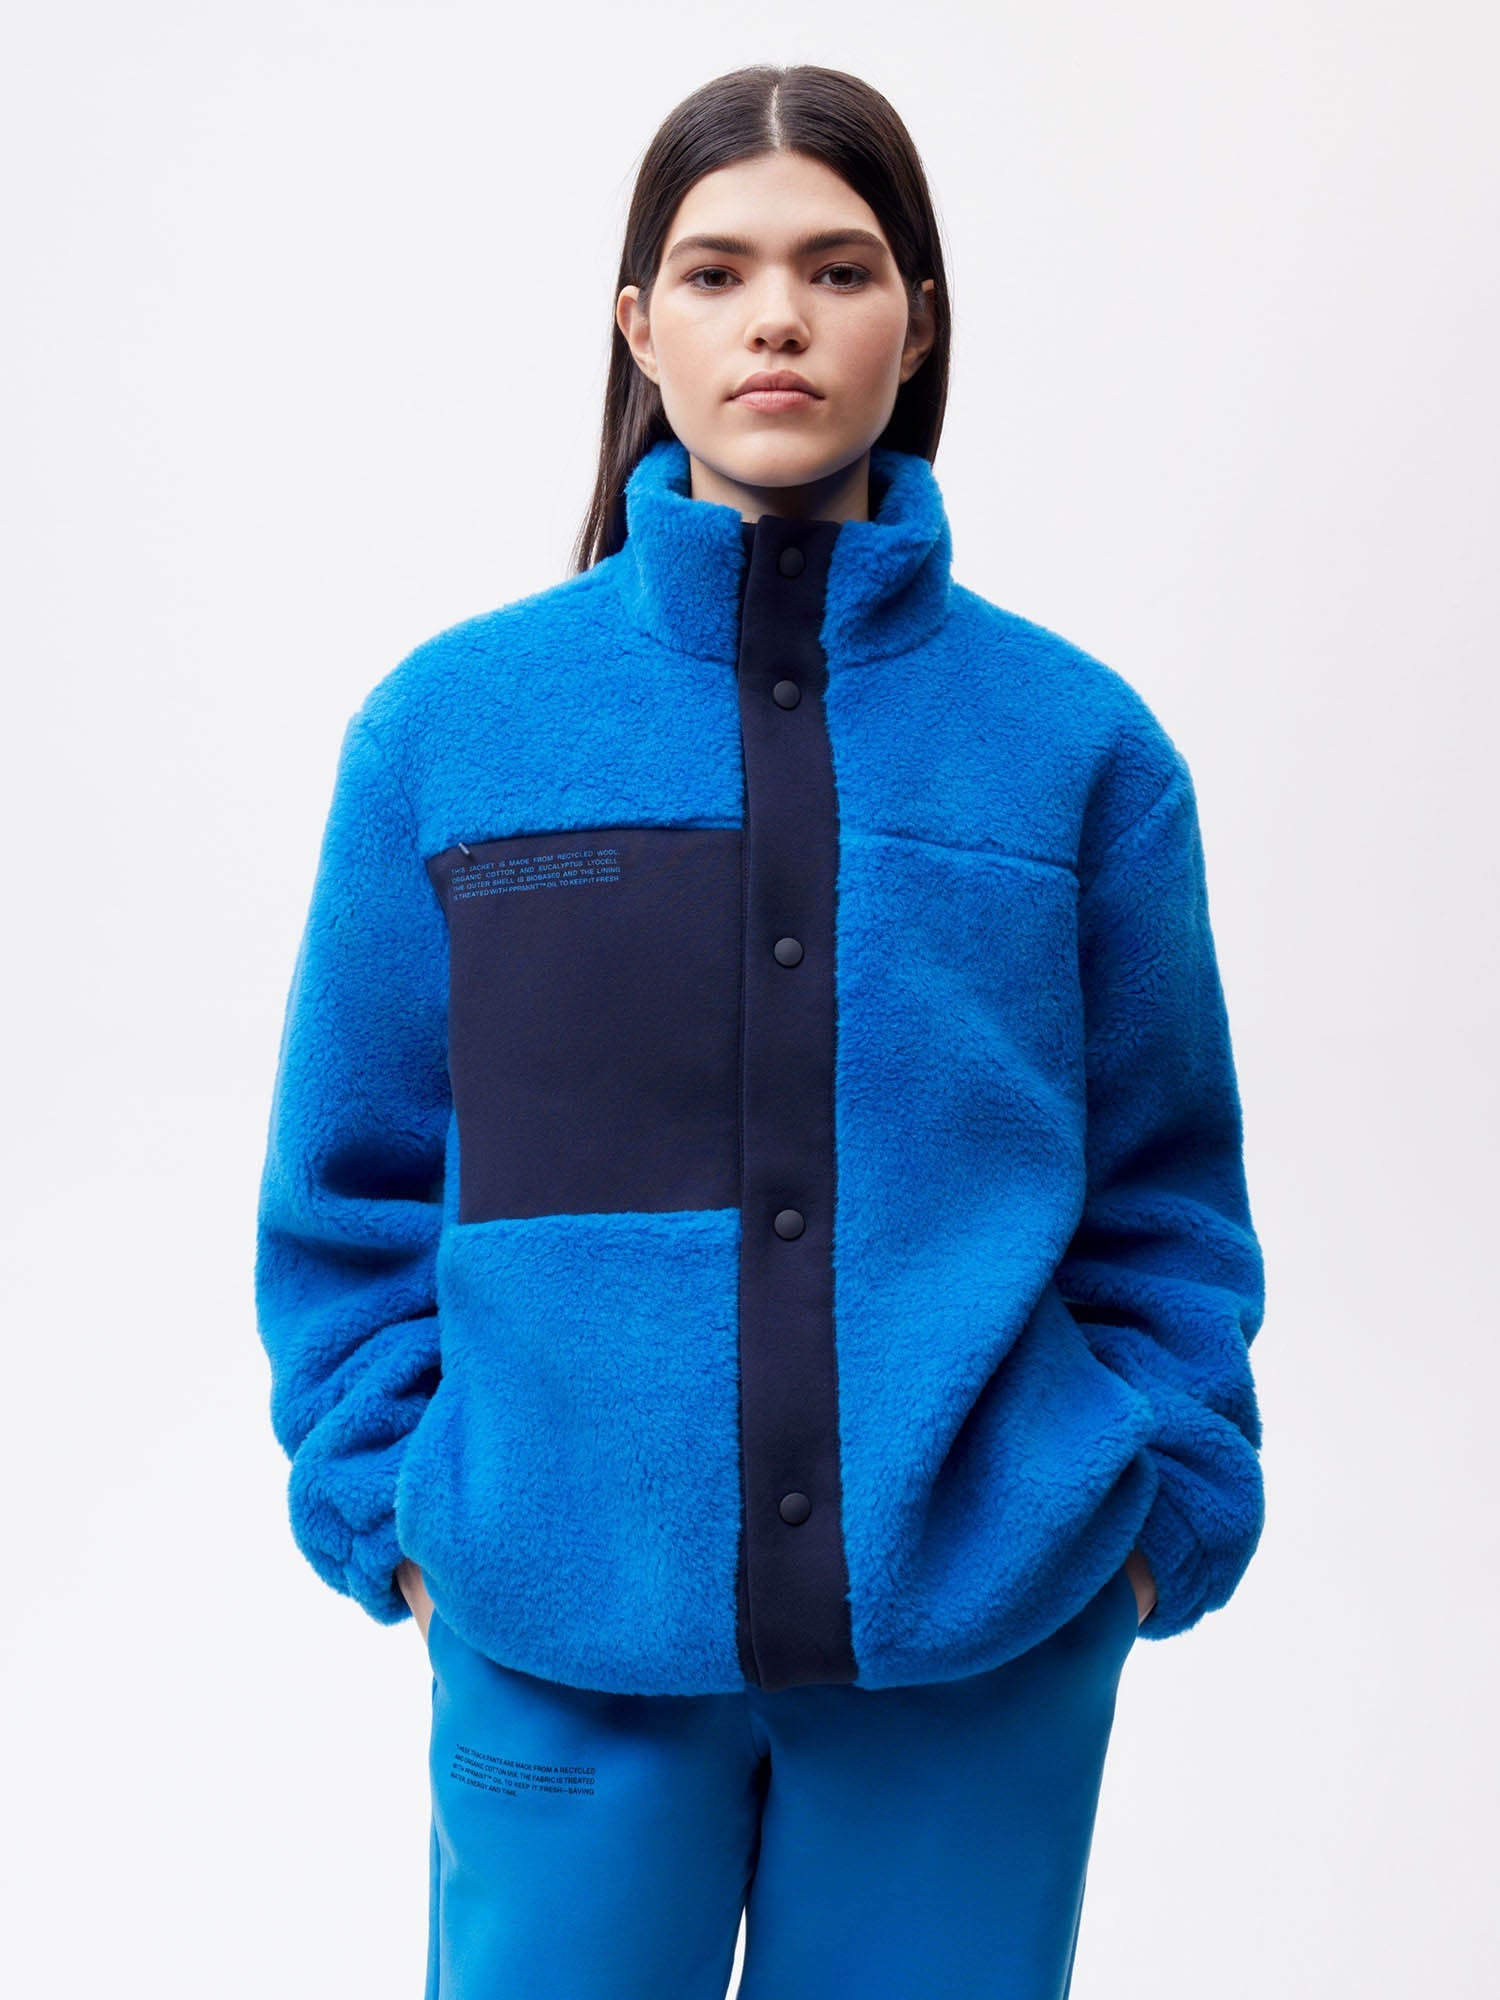 Recycled Wool Fleece Jacket—cerulean blue female